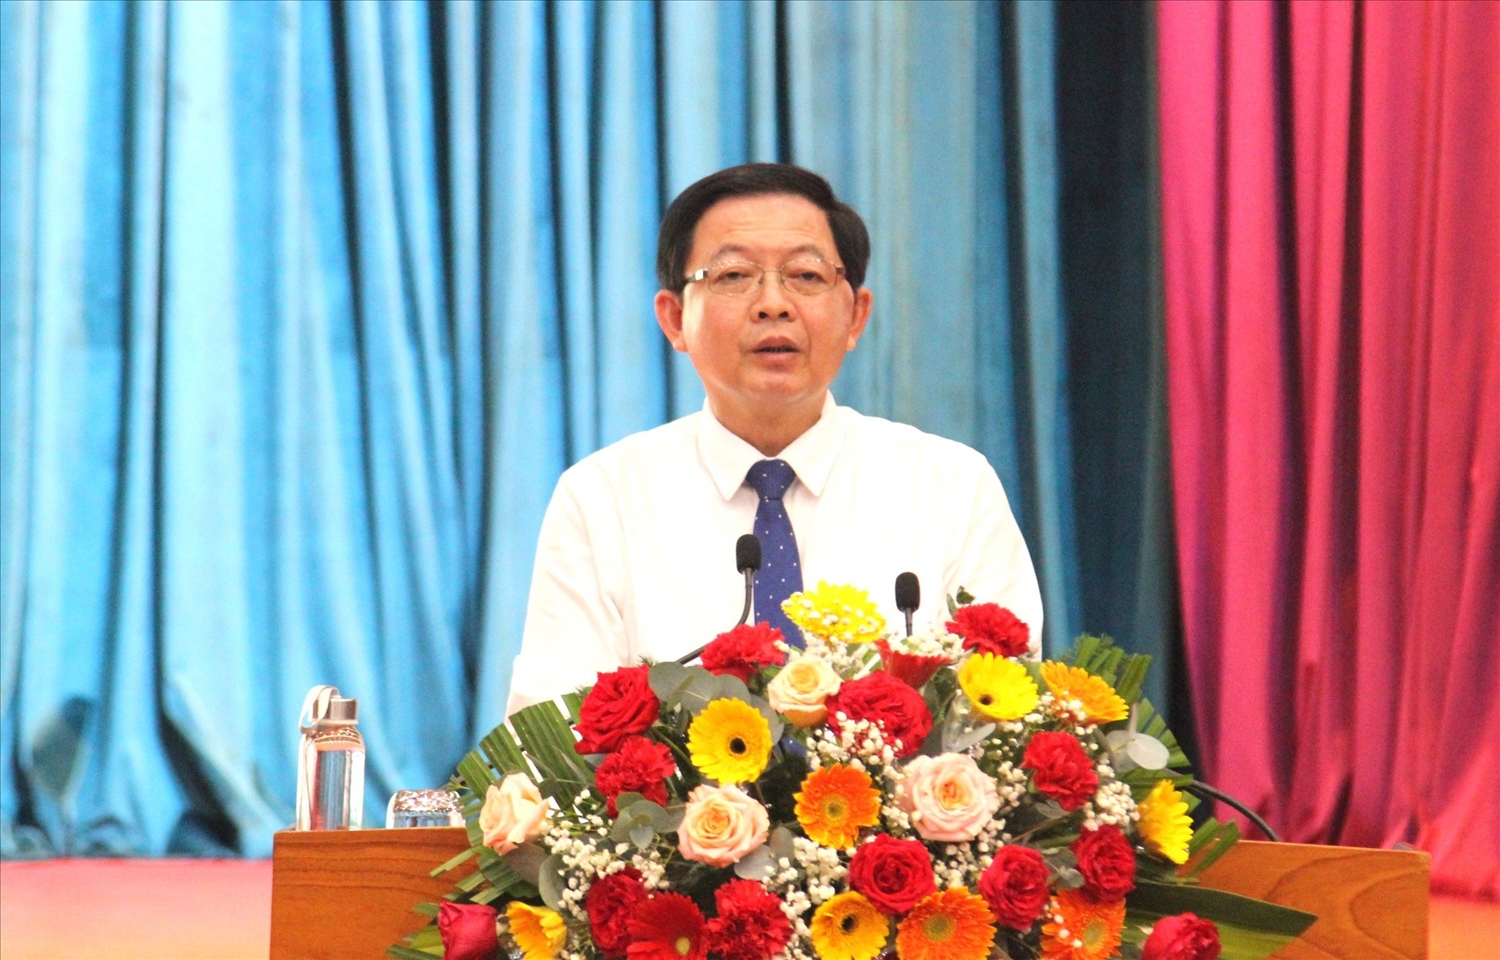 Ông Hồ Quốc Dũng, Bí thư Tỉnh uỷ Bình Định phát biểu tại Hội nghị